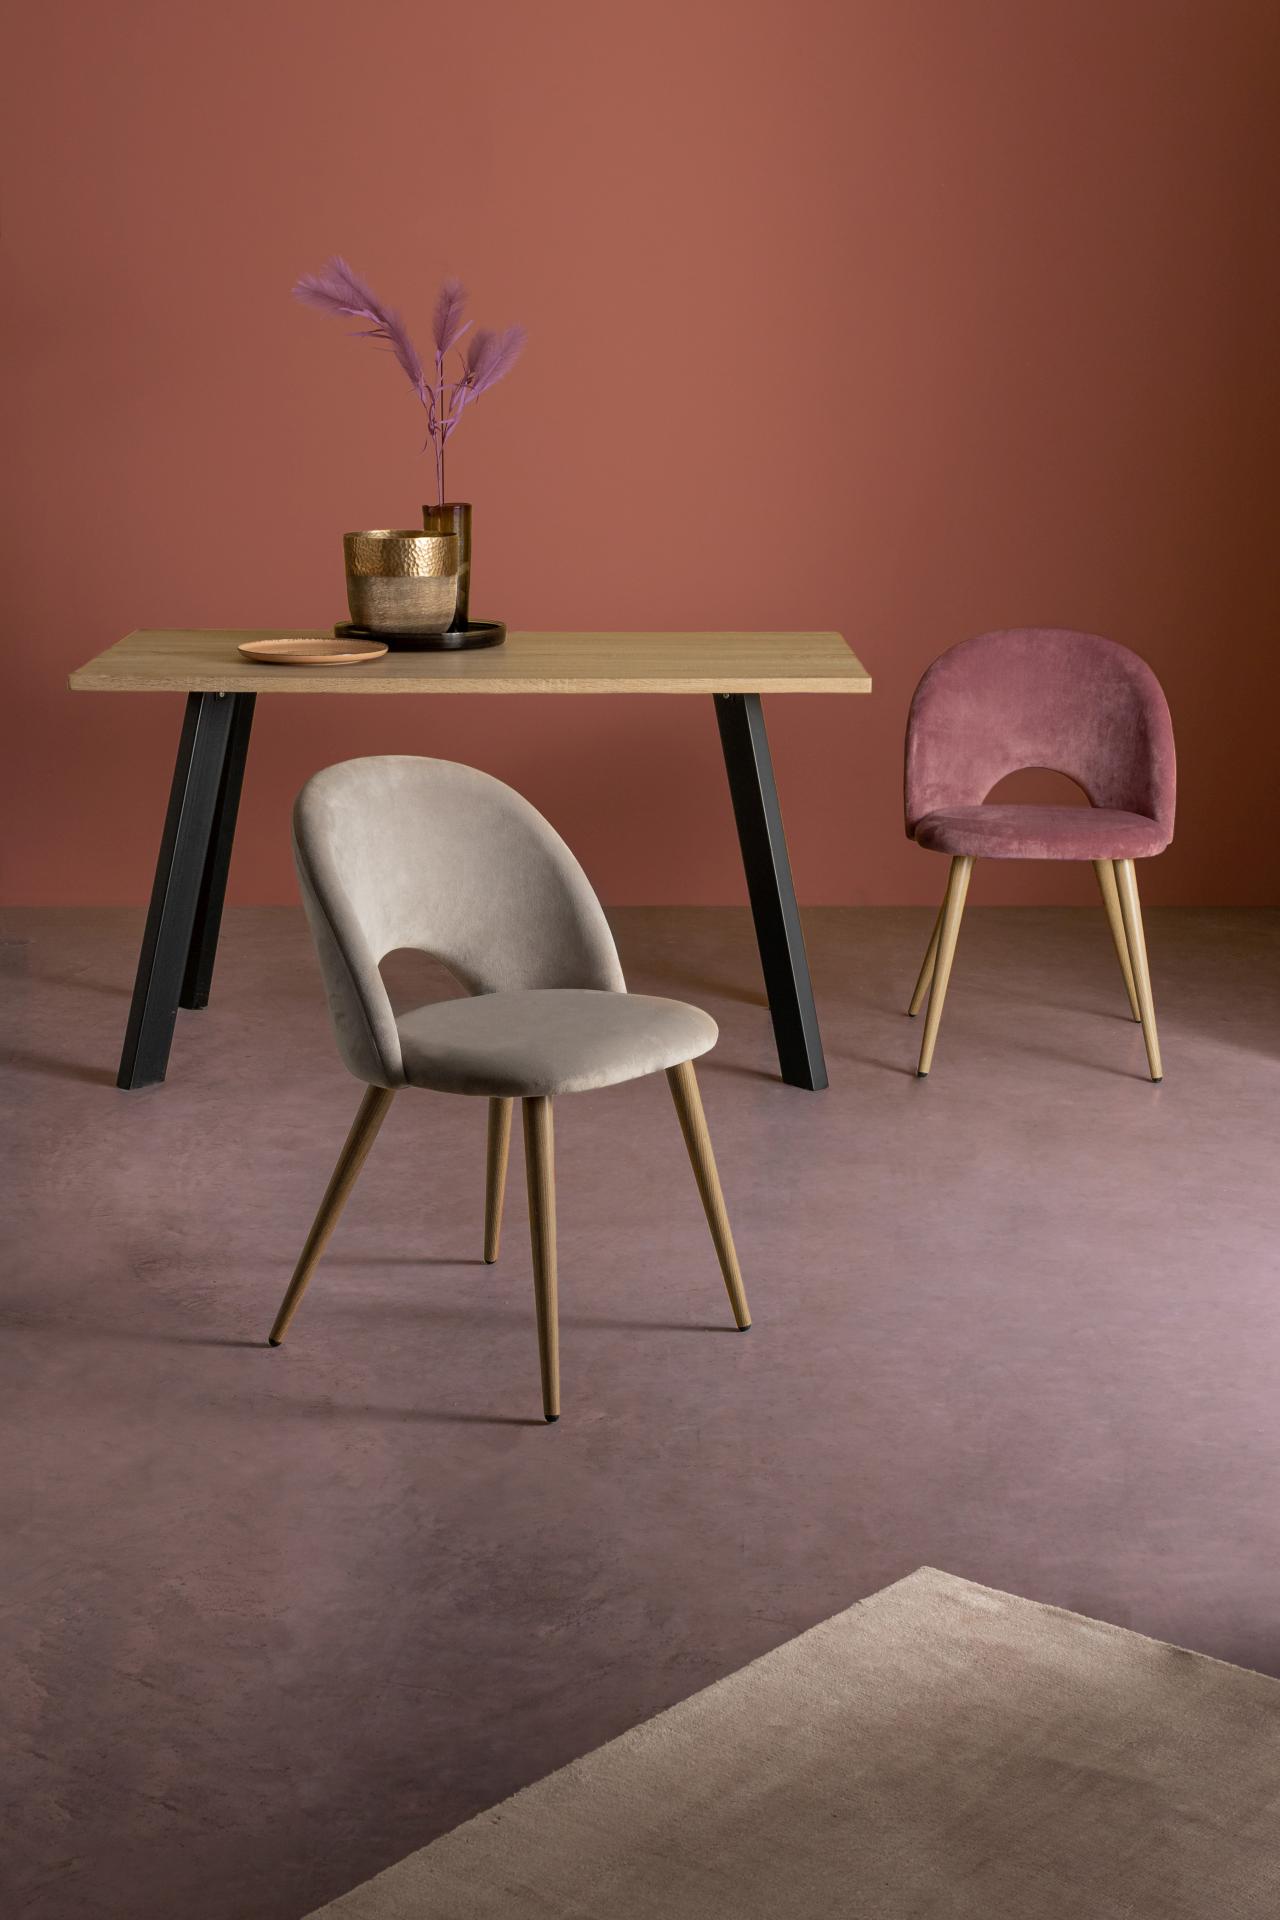 Der Esszimmerstuhl Linzey besitzt einen Samt-Bezug, welcher einen Taupe Farbton besitzt. Das Gestell ist aus Metall und hat eine Holz-Optik. Das Design des Stuhls ist modern. Die Sitzhöhe des Stuhls beträgt 46 cm.